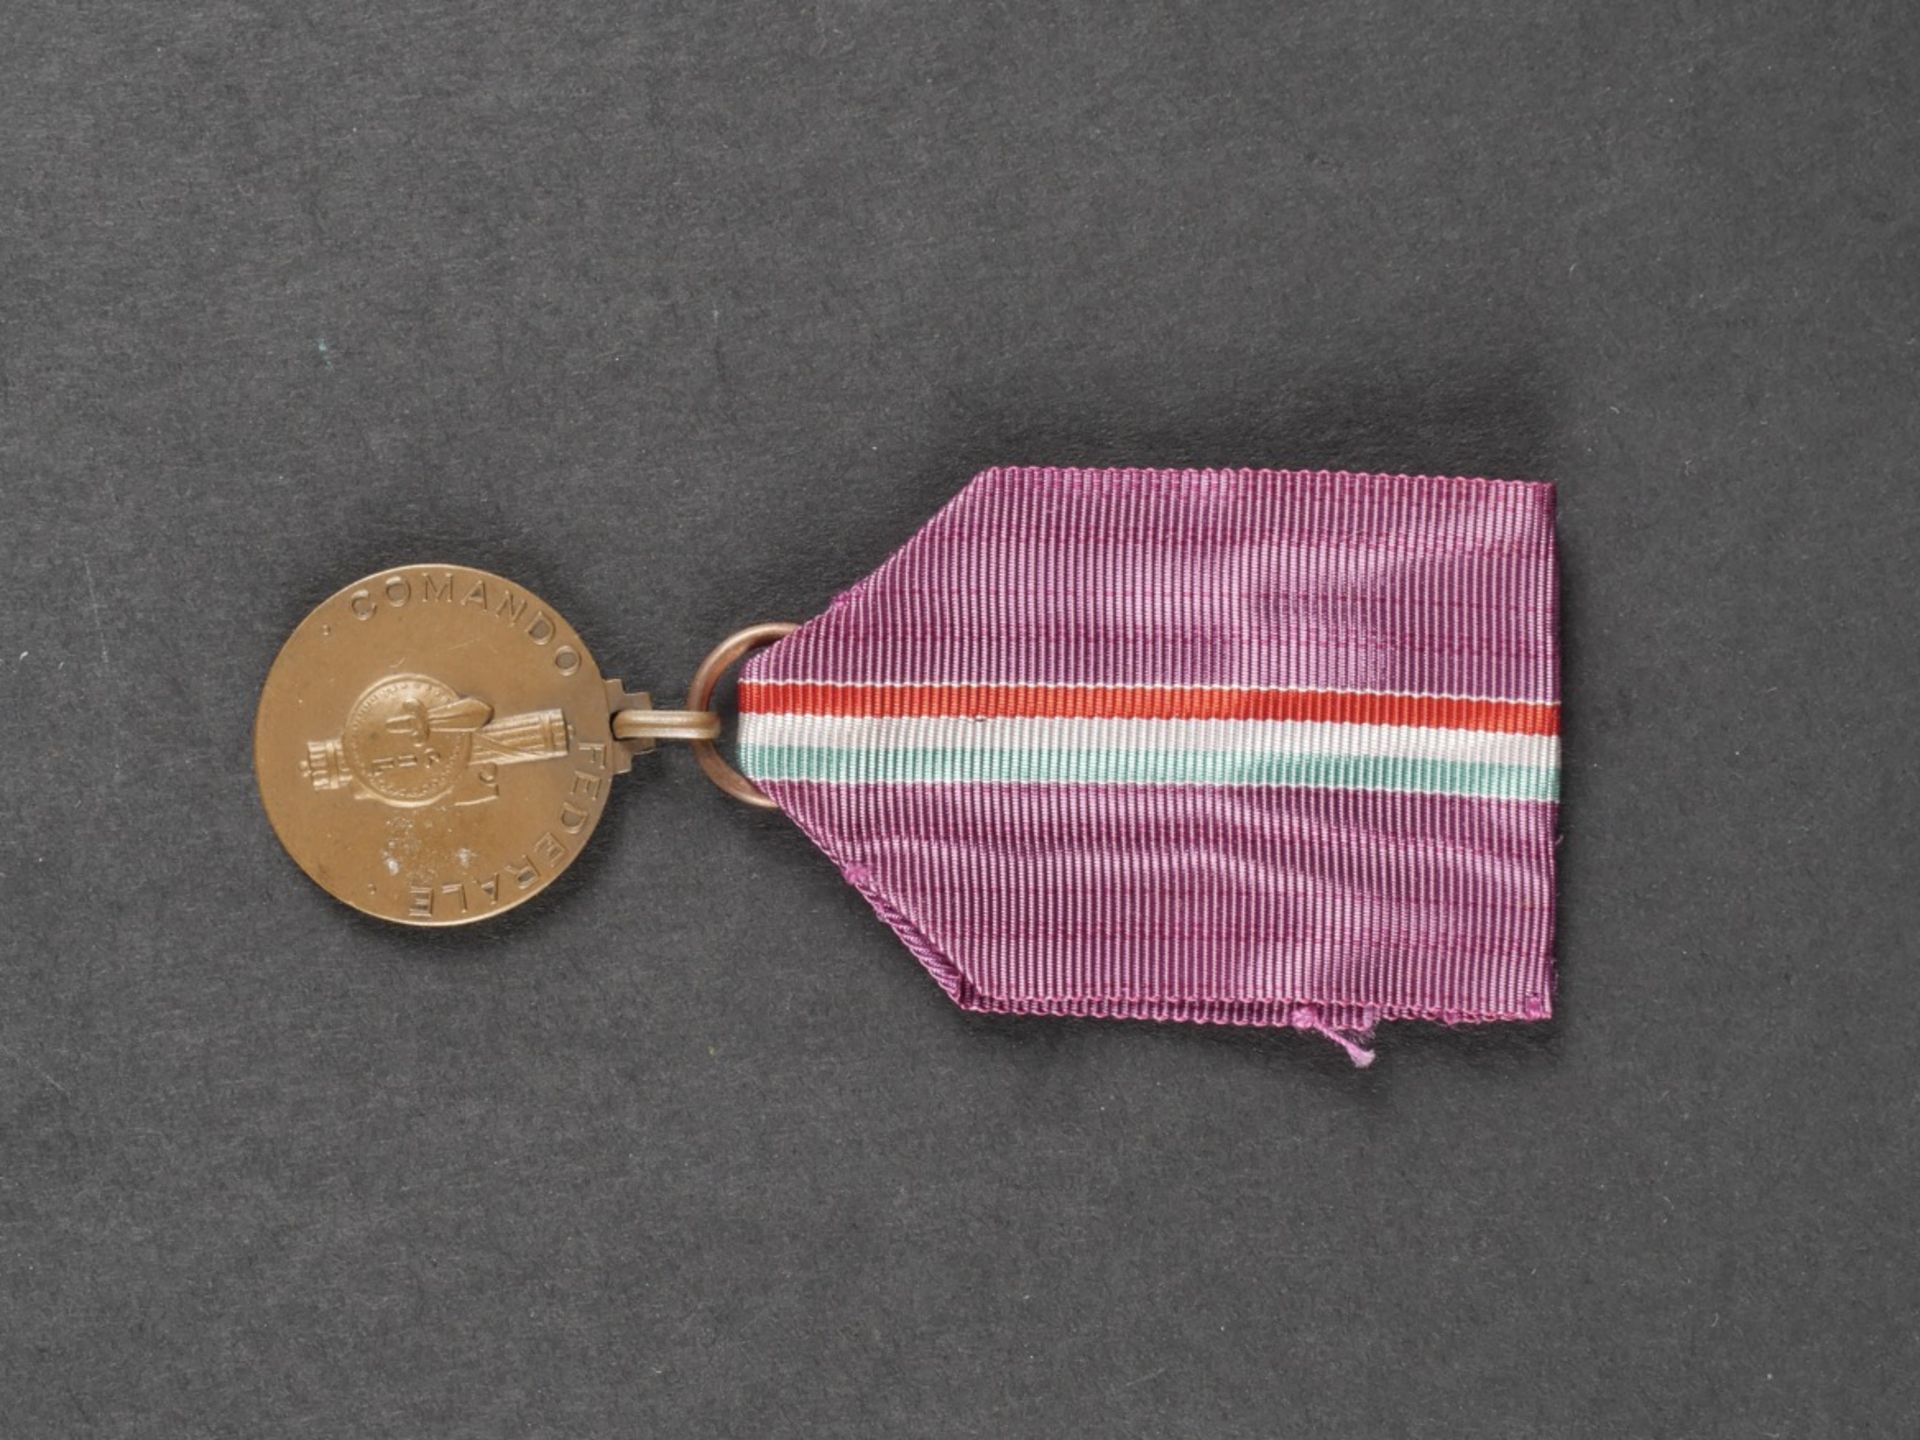 Glaive de recompense pour le 100 metres dos des championnats sportifs de la jeunesse dEurope en 194 - Bild 18 aus 19